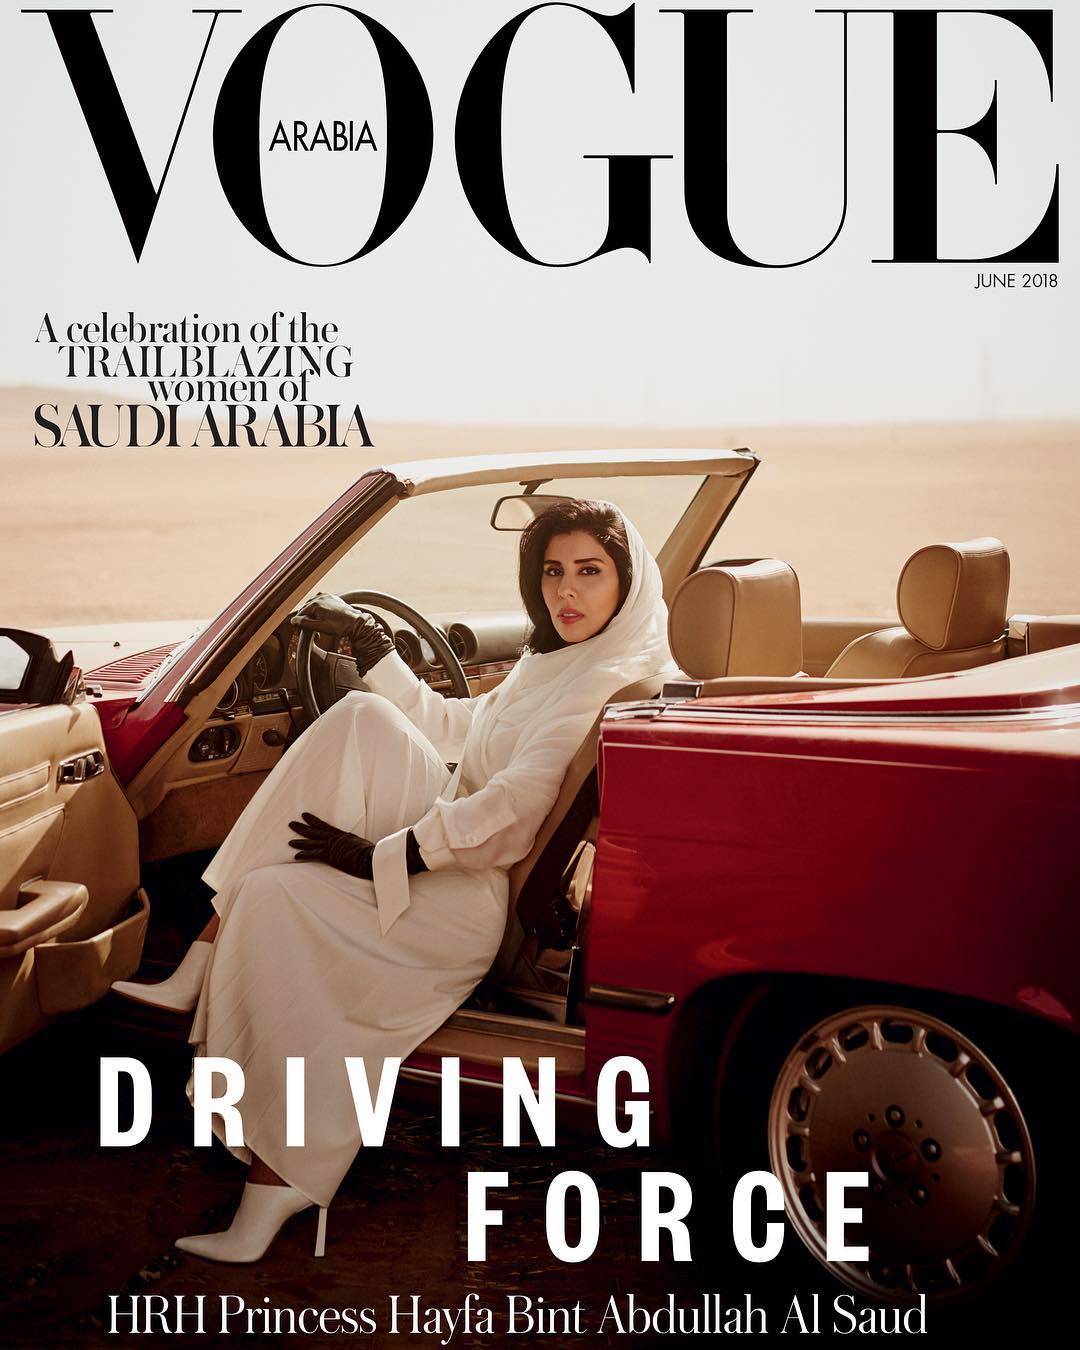 La copertina del numero di Vogue Arabia - Twitter/Vogue Arabia